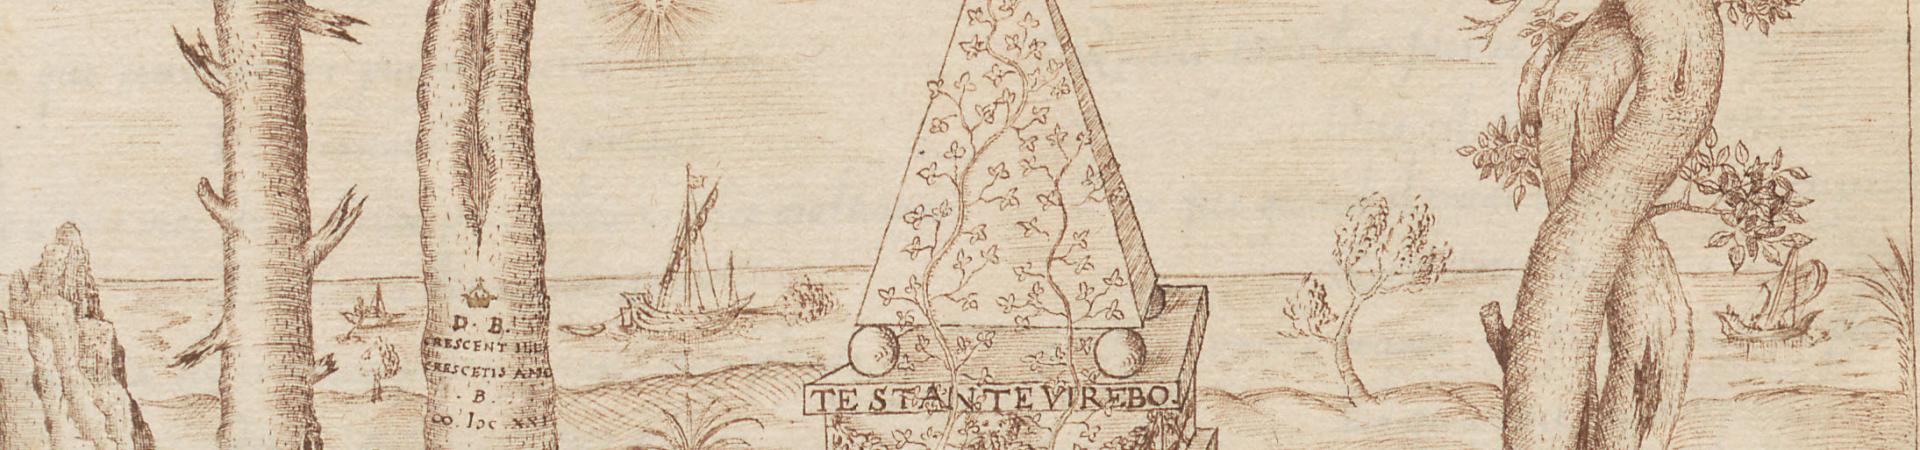 Pentekening piramide met citaat "Te stante virebo" uit 17de-eeuws liedboek